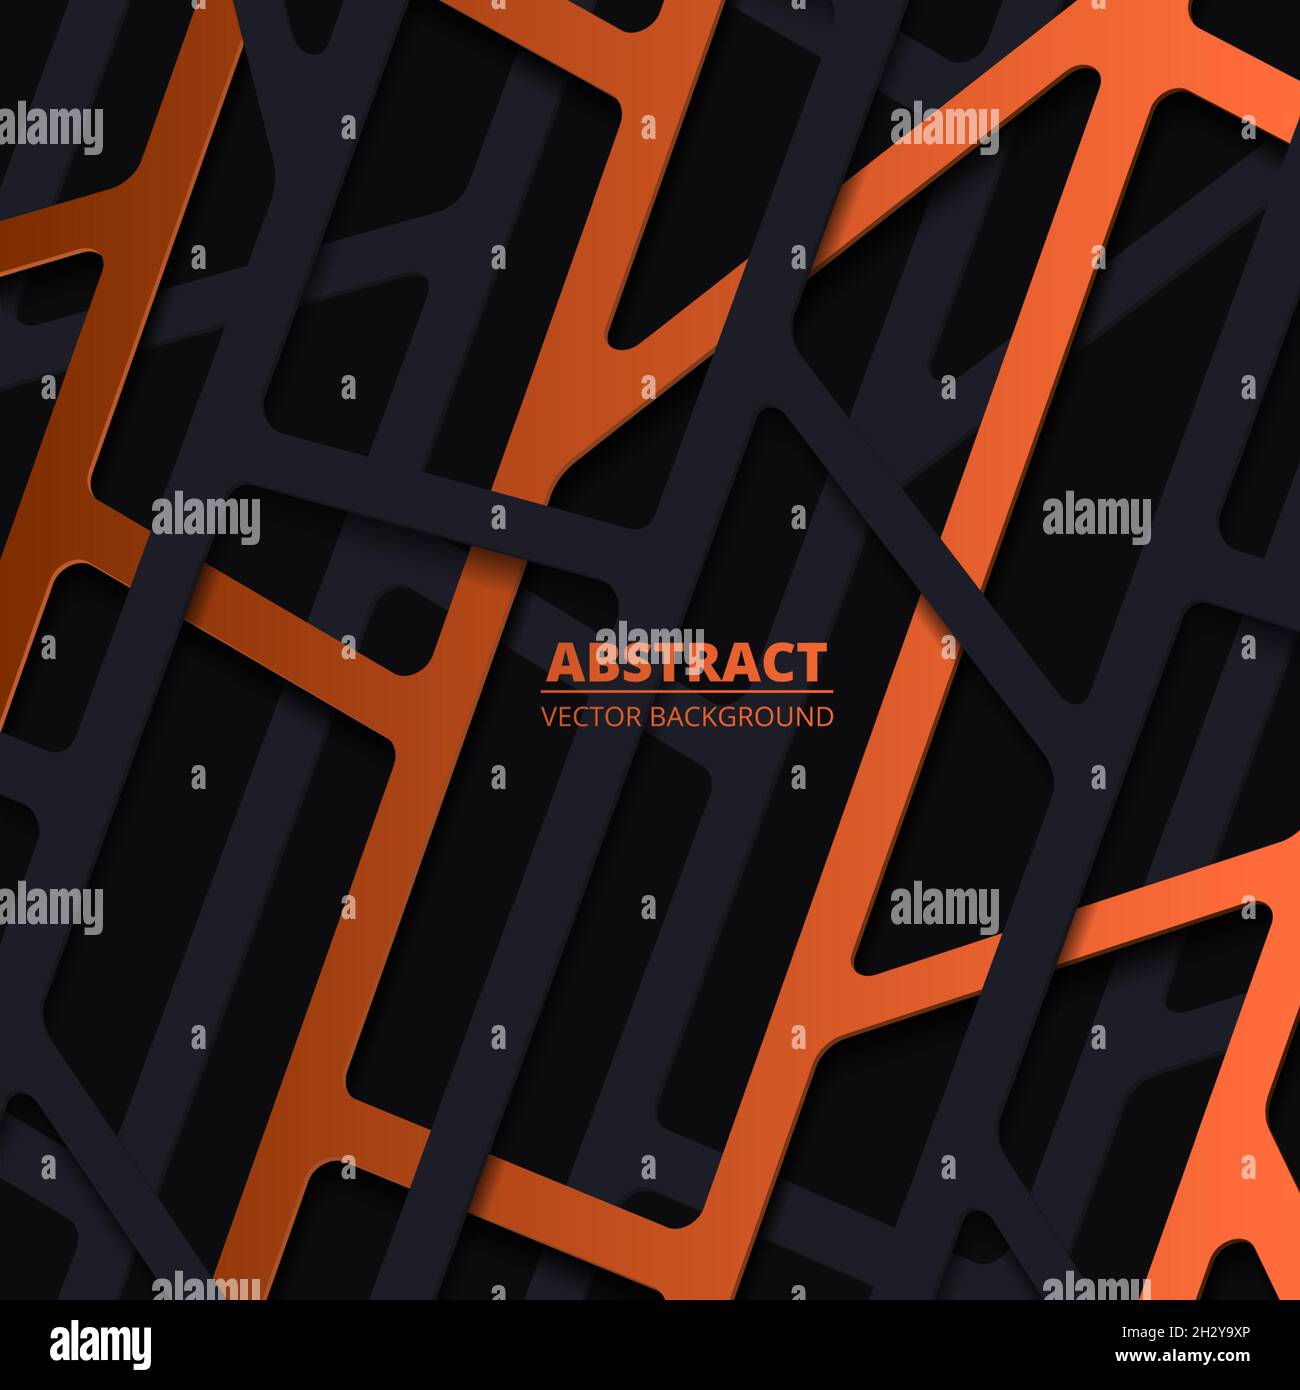 Elegante sfondo astratto con forme di carta profonde lineari in nero e arancione Illustrazione Vettoriale